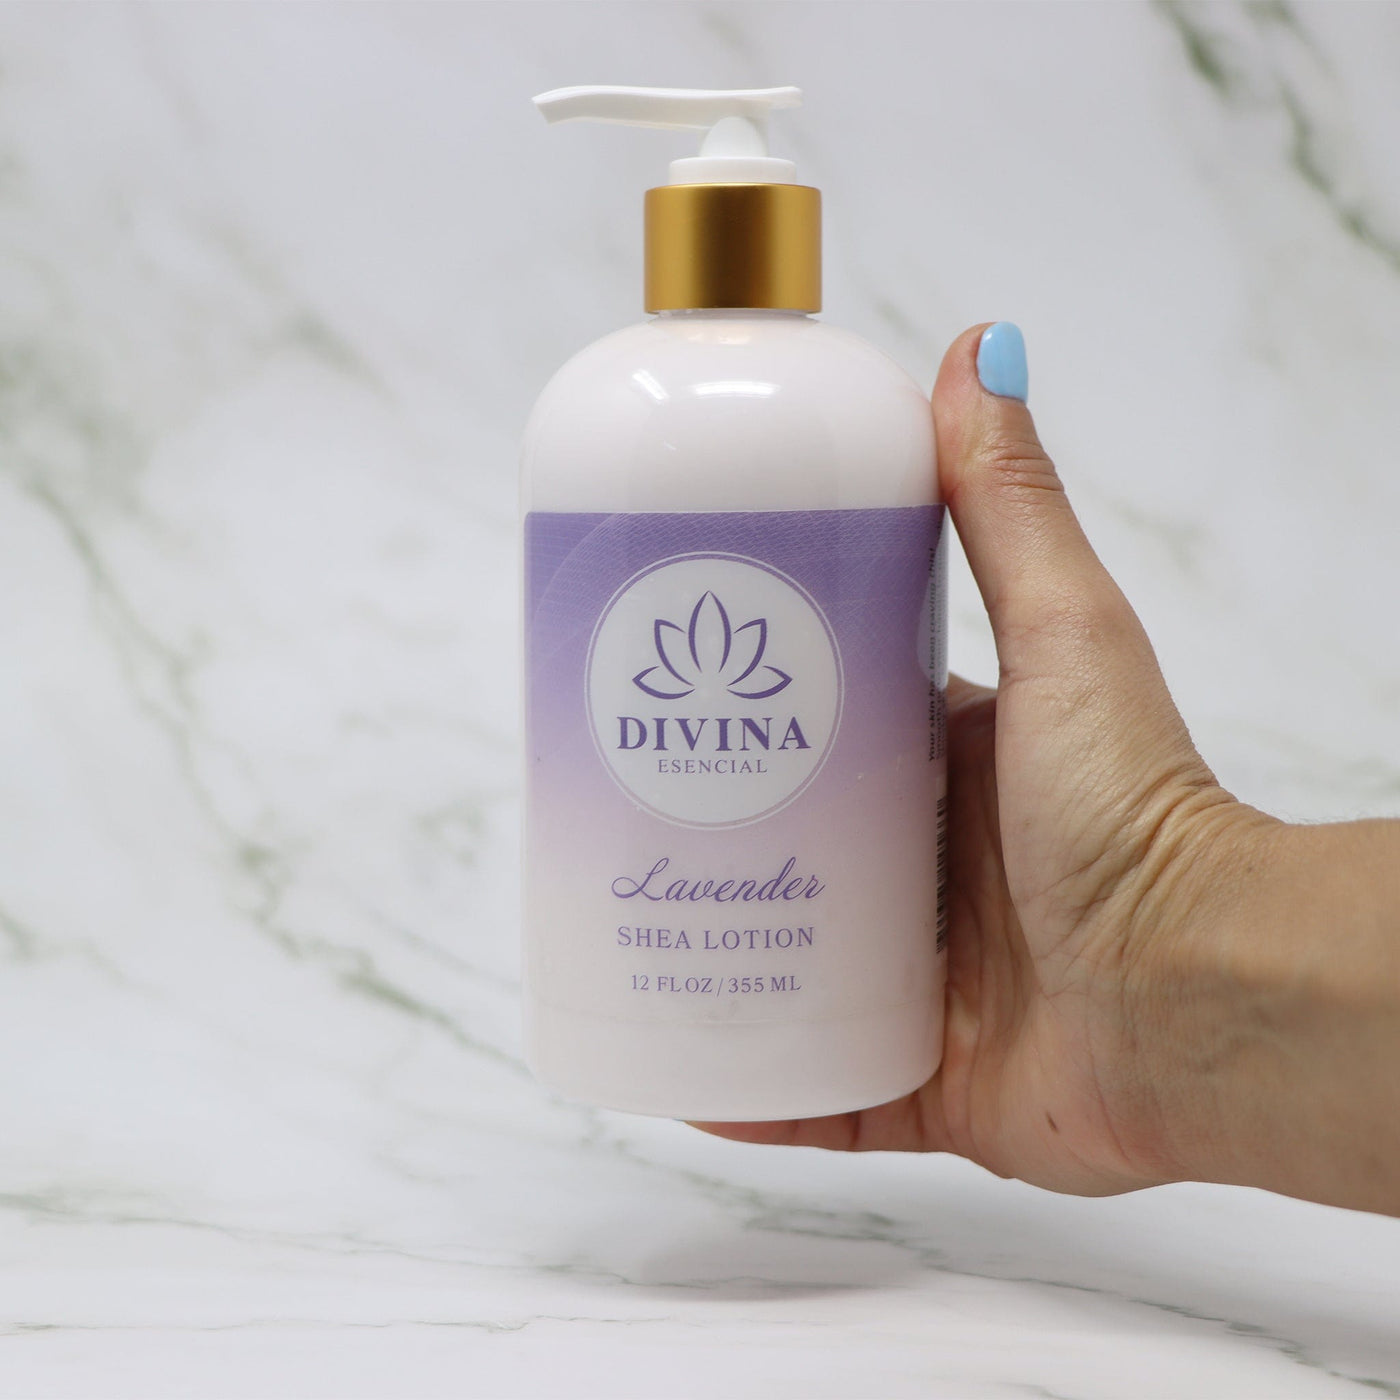 Divina Esencial Hand Soap & Shea Lotion Lavender 2-Piece Set